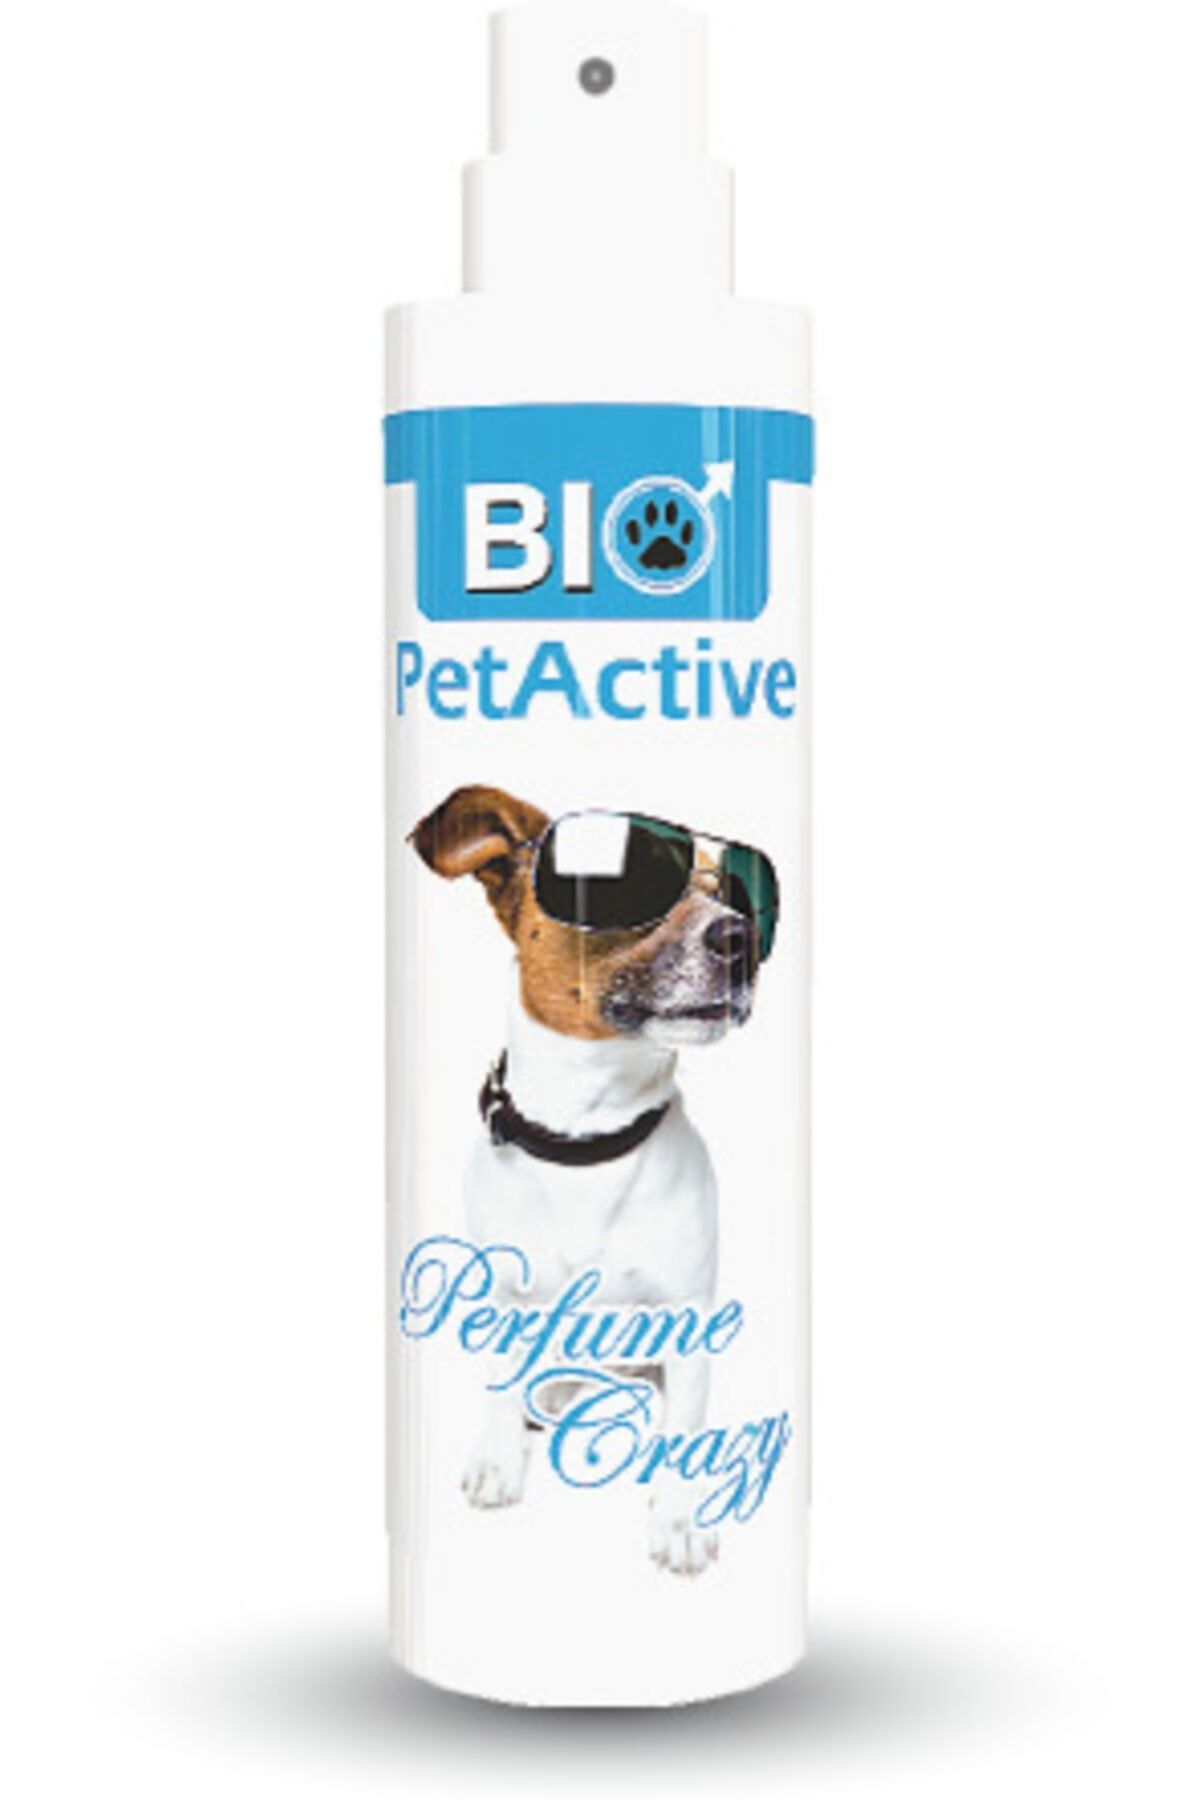 Bio PetActive Bıo Petactıve Crazy Parfüm 50ml